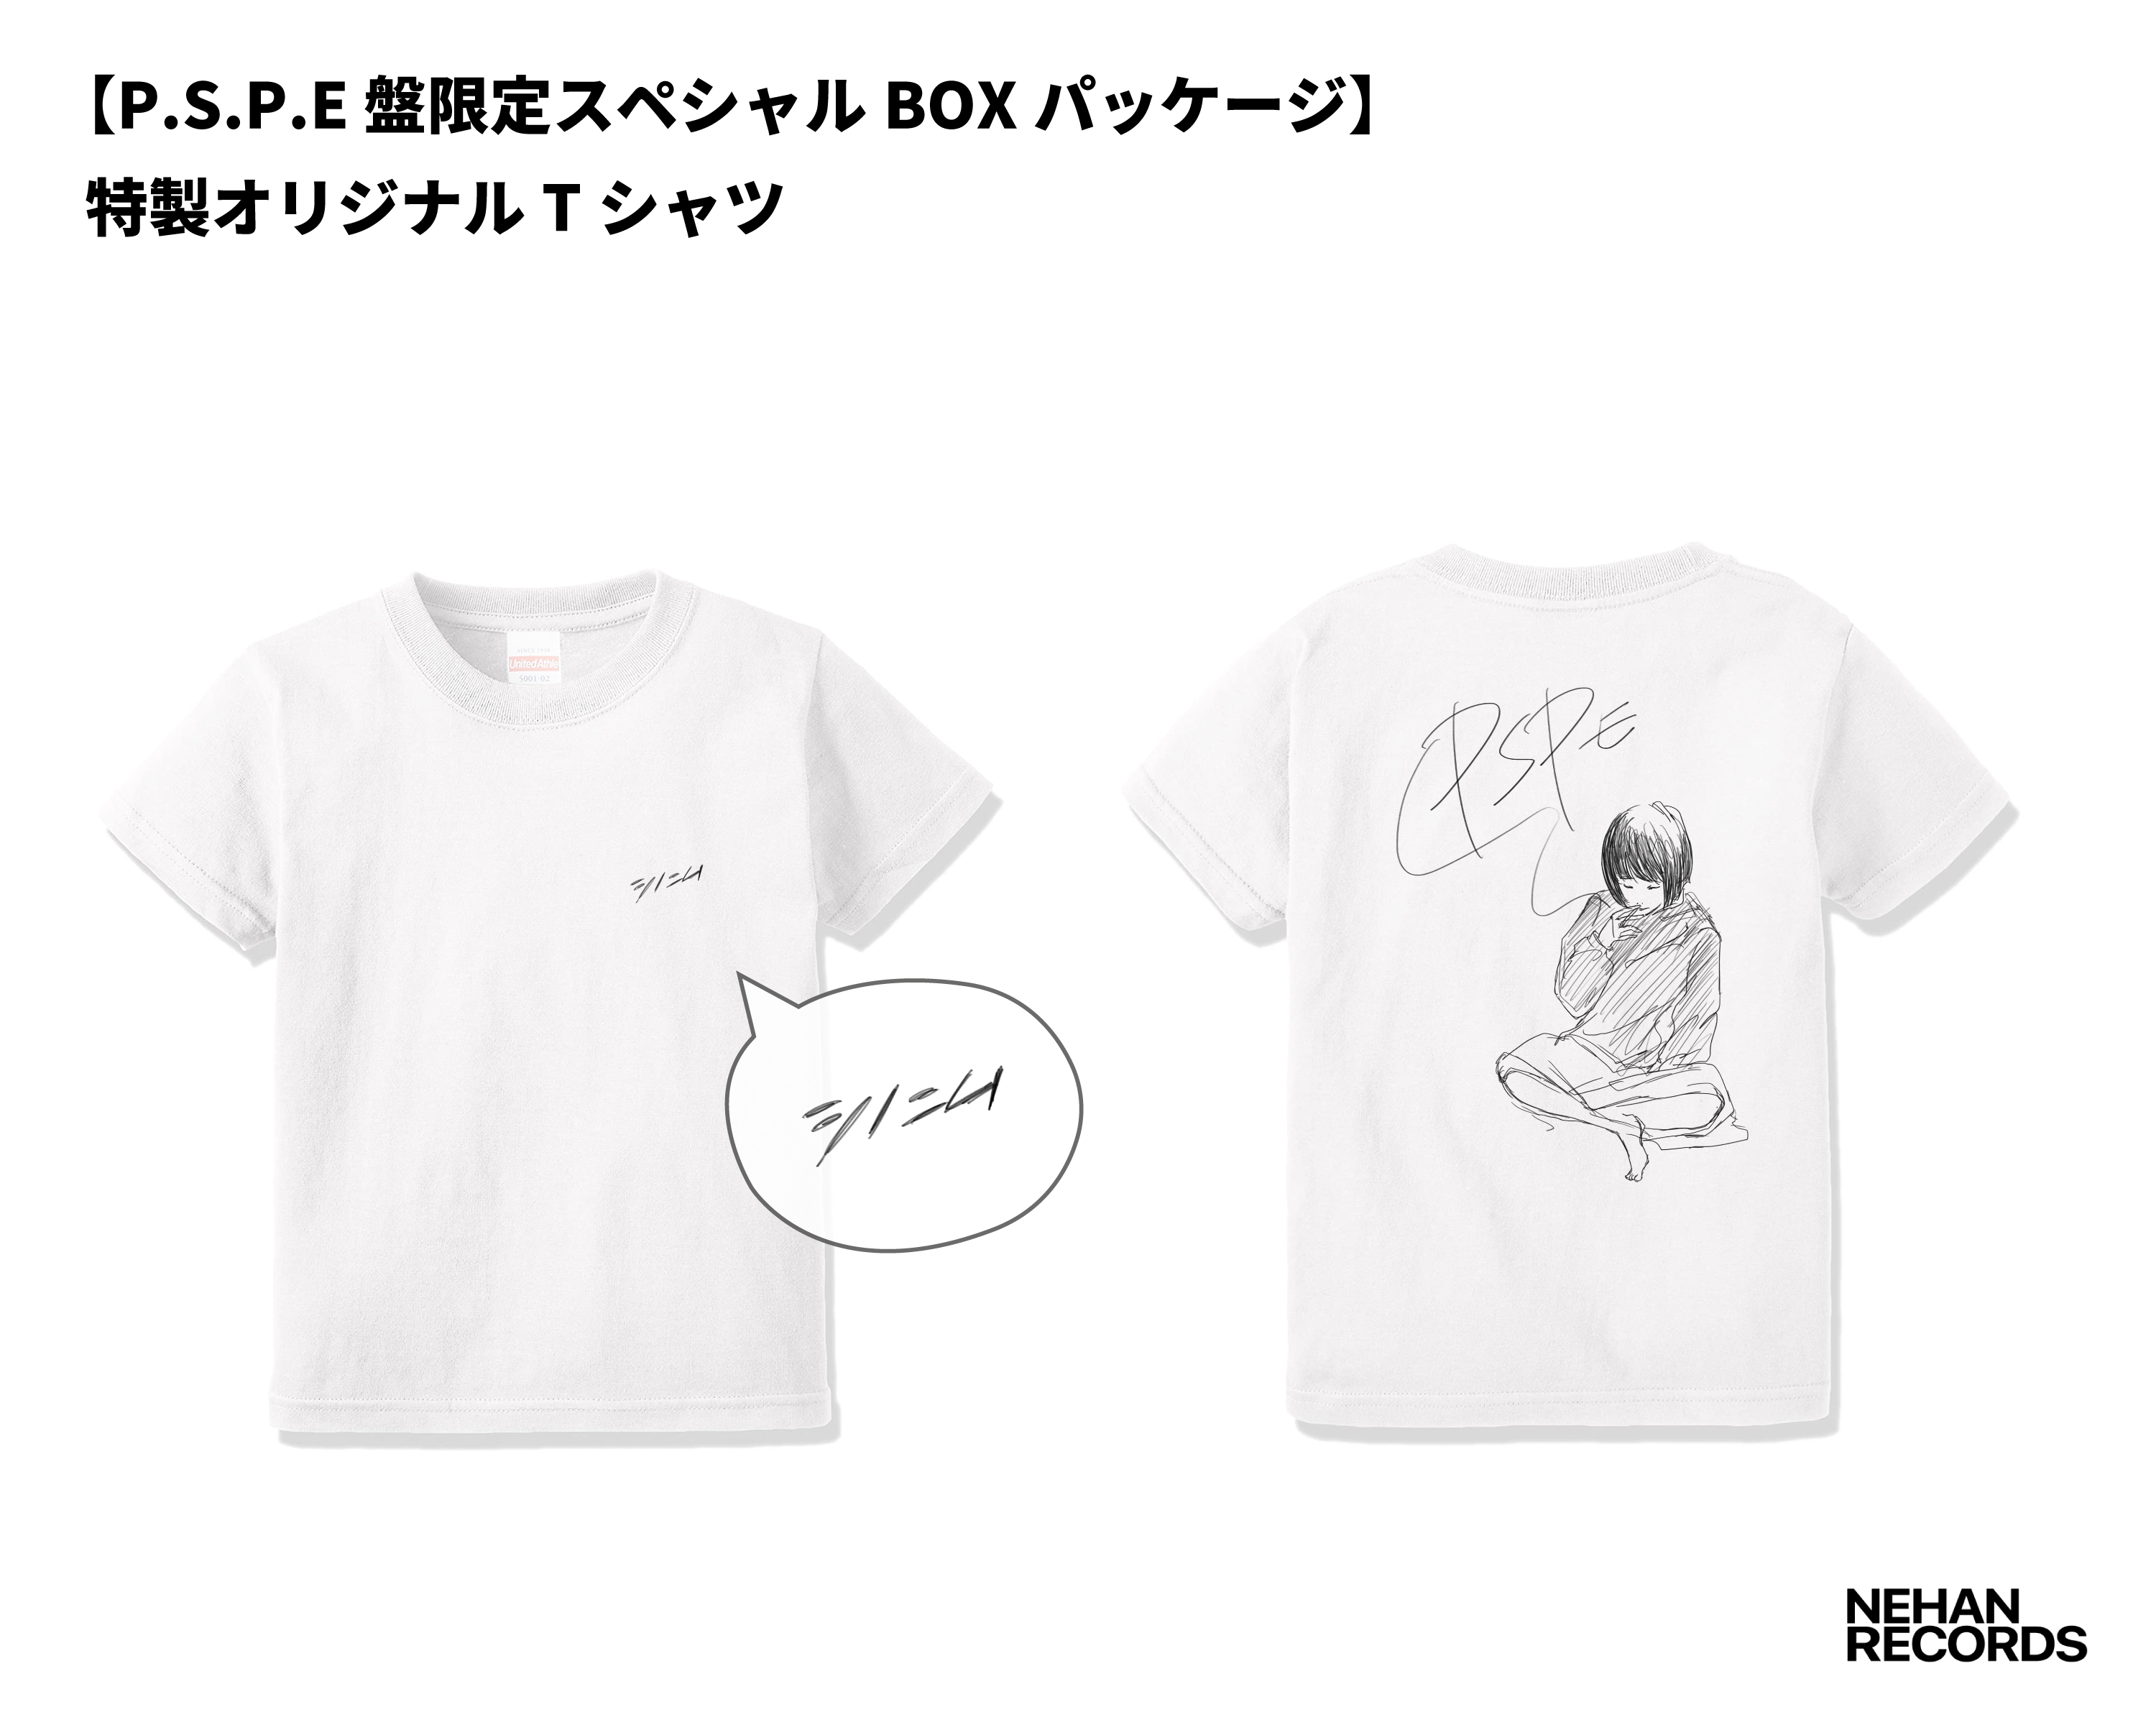 P.S.P.E盤限定スペシャルBOXパッケージ封入 特製オリジナルTシャツ